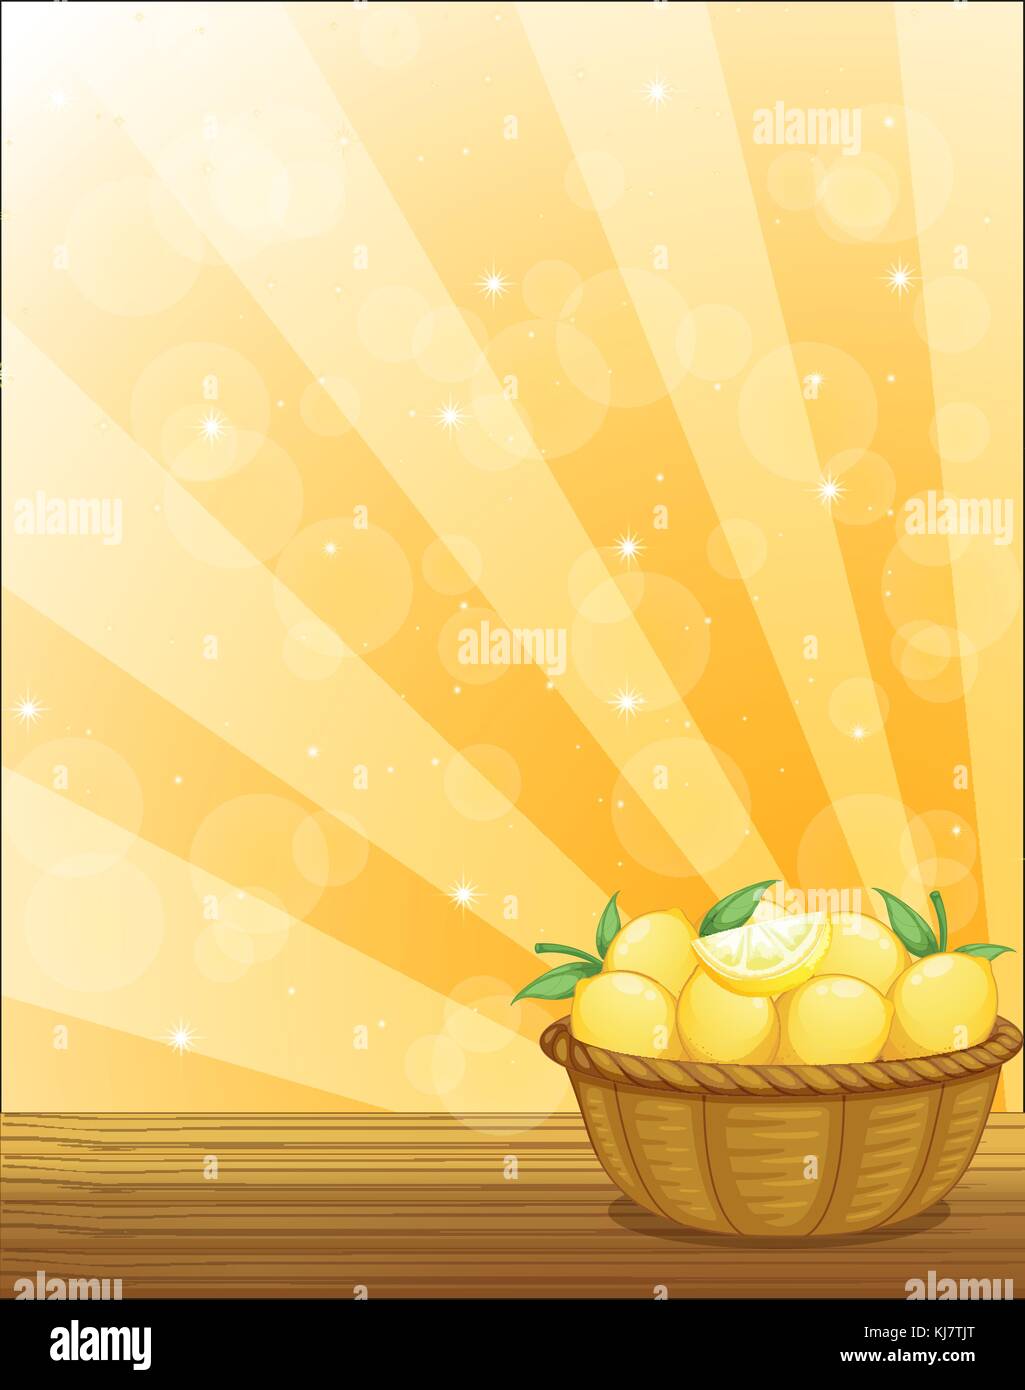 Ilustración de una canasta llena de limones Ilustración del Vector